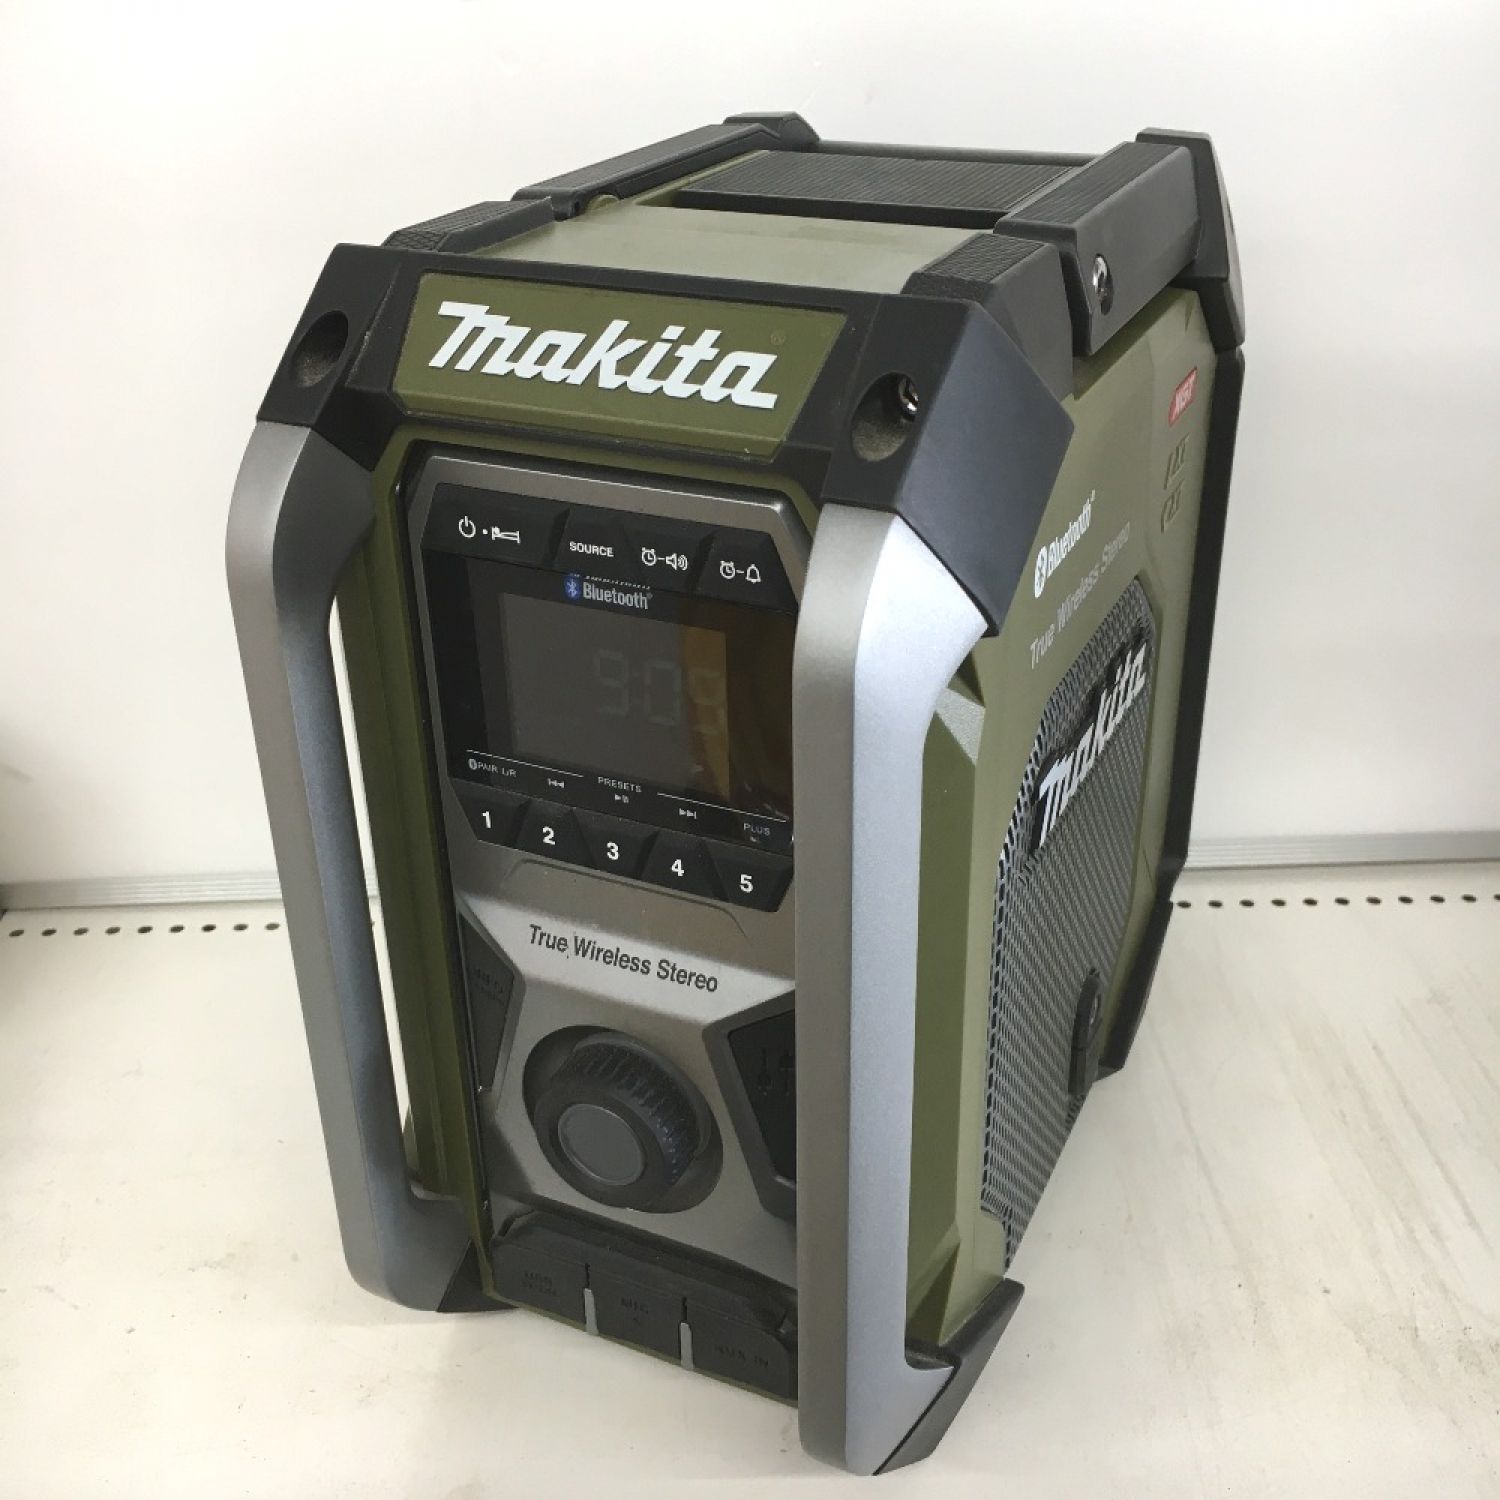 マキタ　充電式ラジオ　MR005Gスピーカー・ウーファー